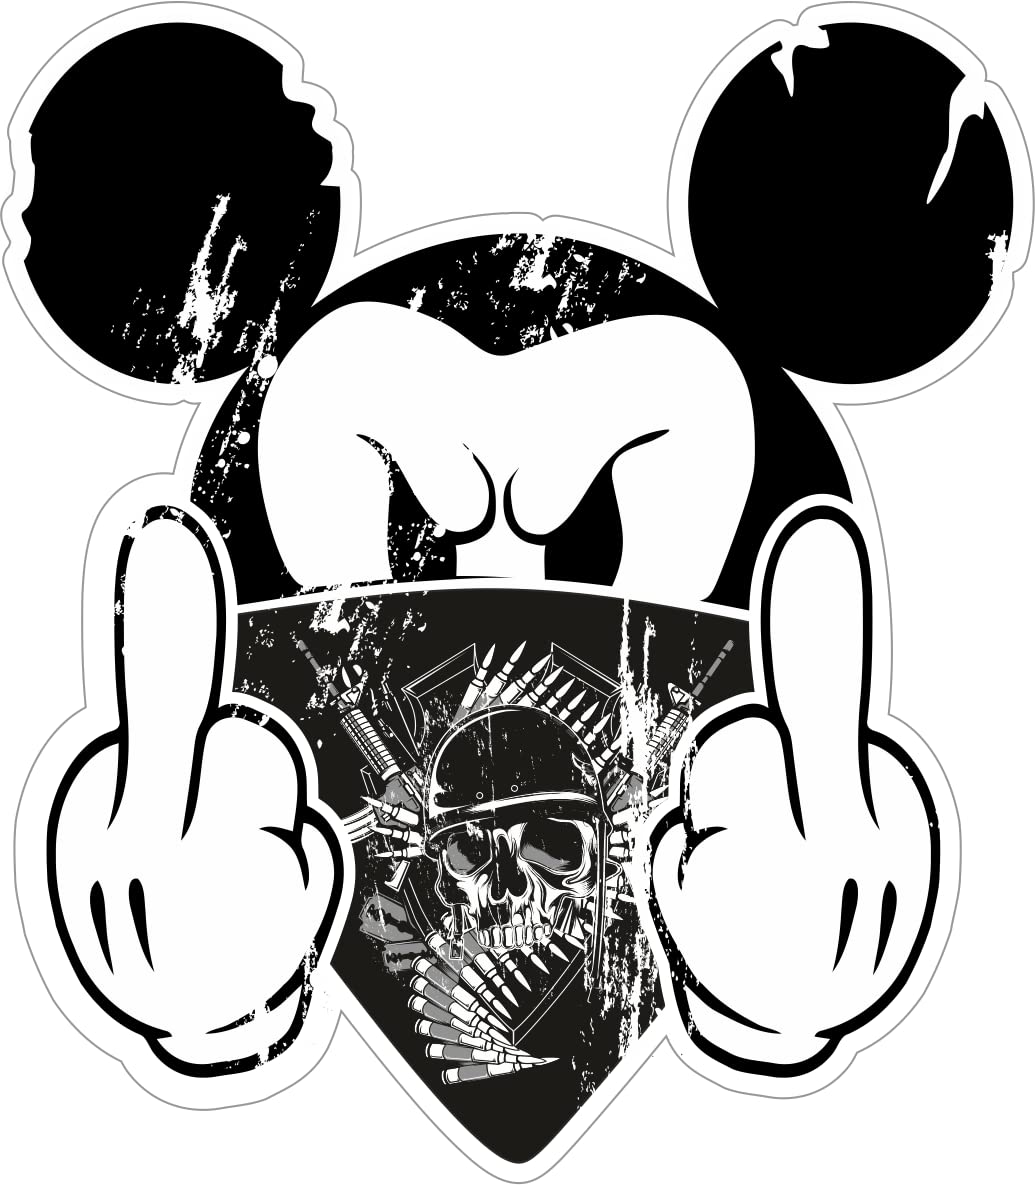 Lustiger Aufkleber Autoaufkleber Bad Mickey Mouse Minni Maus Funny Sticker Auto Motorrad Fenster Digitaldruck Dirty Fun Aufkleber Sticker Anti Greta i Hate You von stickerpoint24